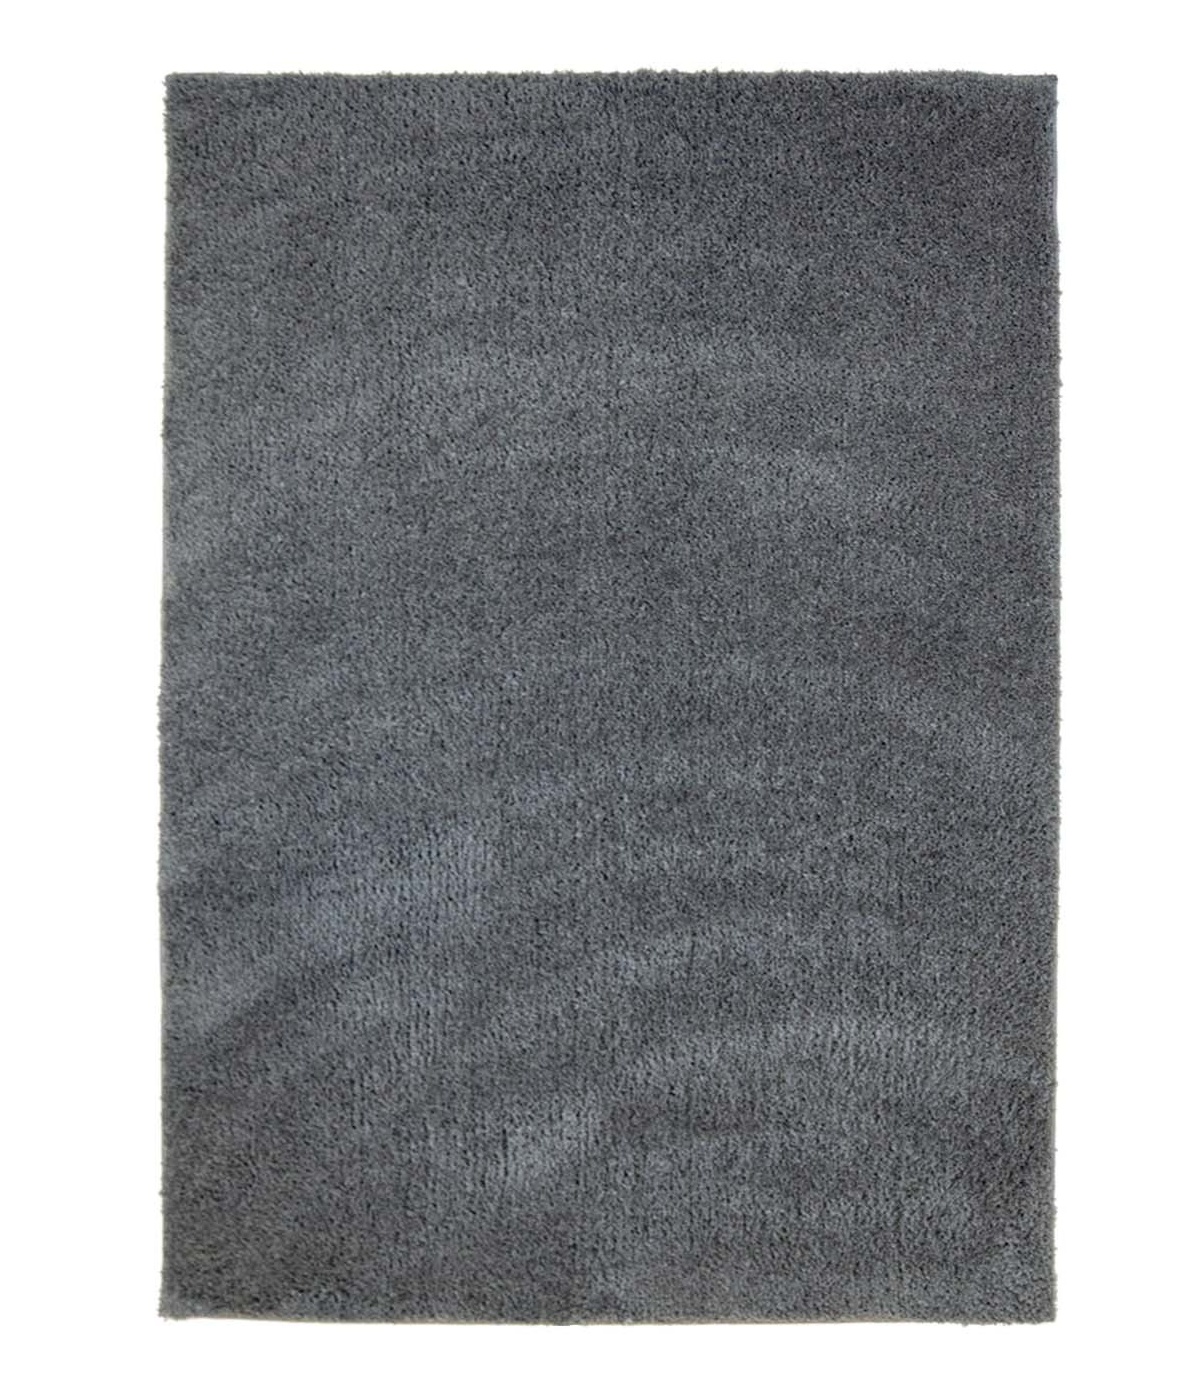 Soft Shine tapis shaggy Gris foncé rond 60x120 cm 80x 150 cm 140x200 cm 160x230 cm 200x300 cm